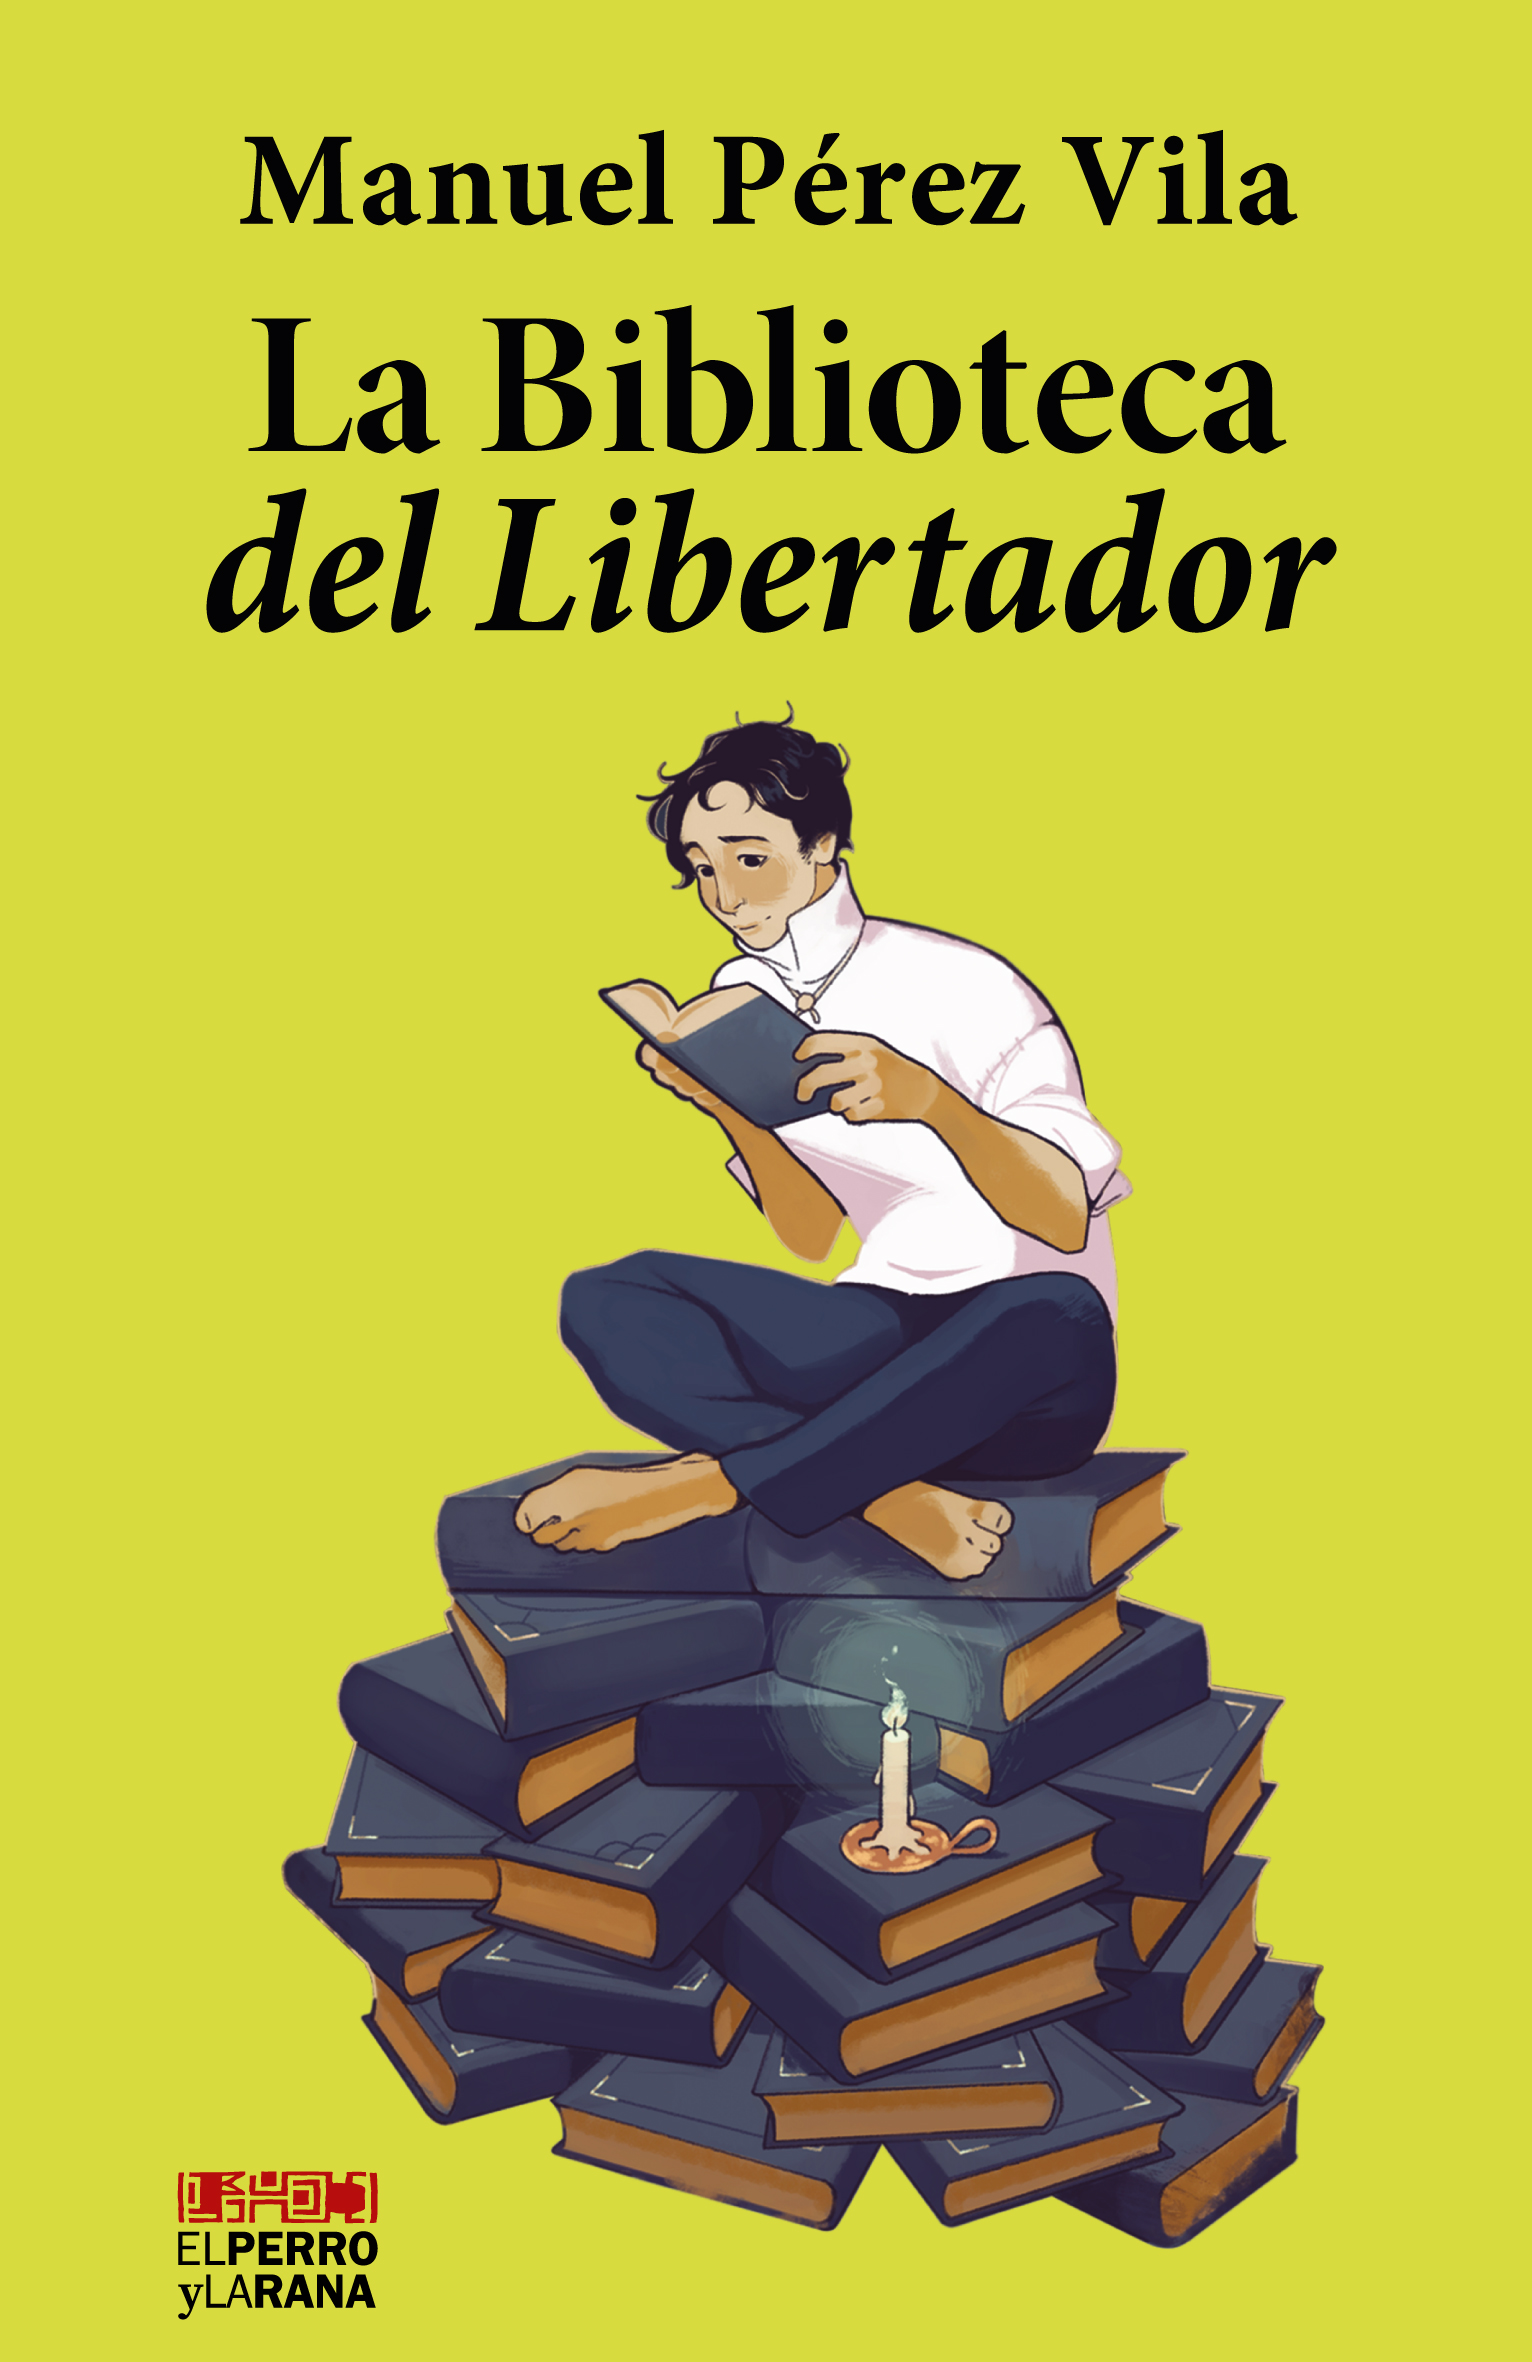 La Biblioteca del Libertador